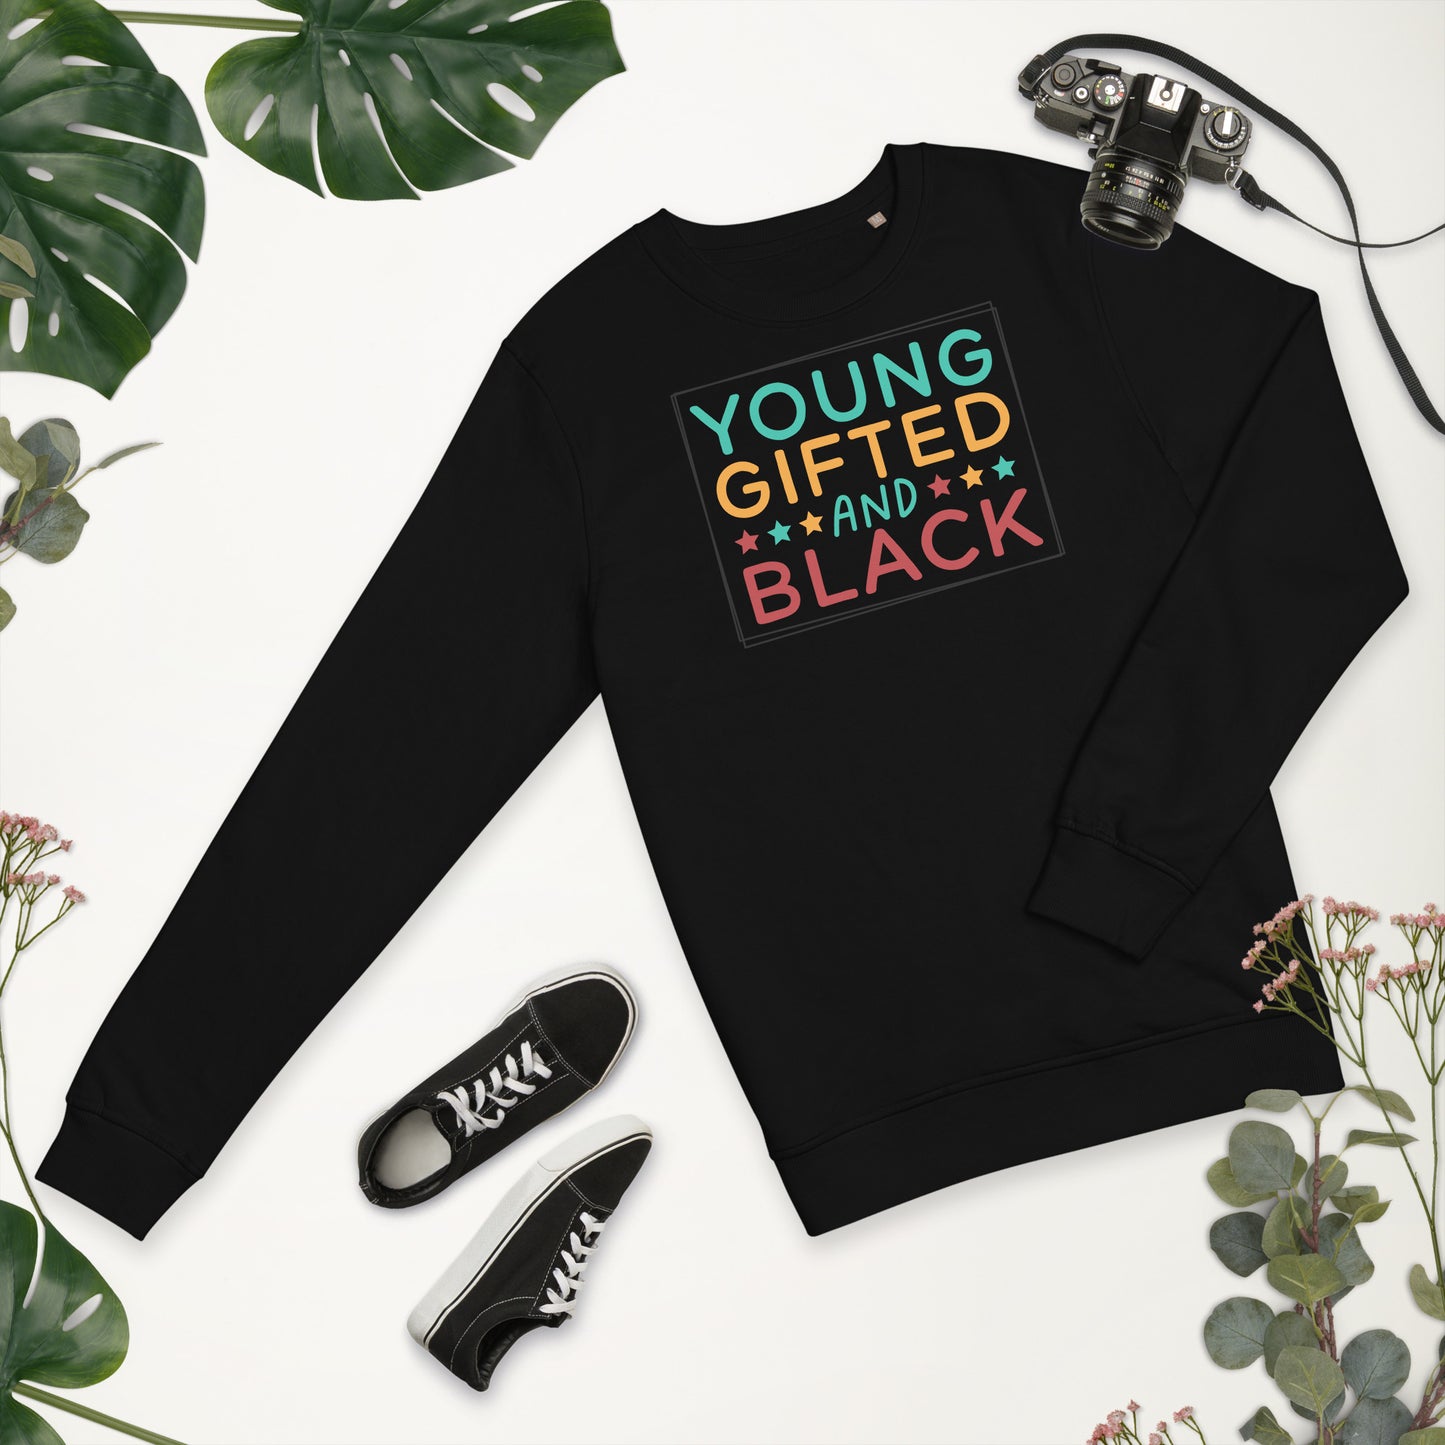 Unisex organic sweatshirt - Young Gifted and Black